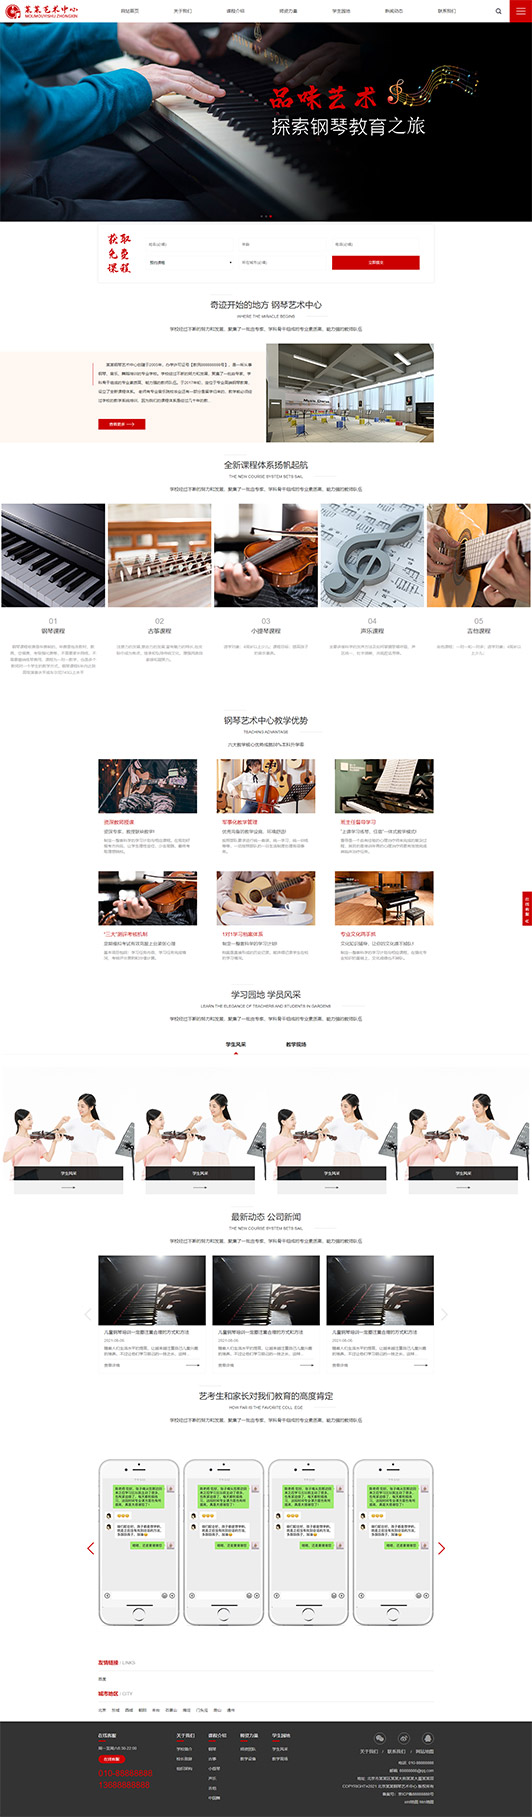 郴州钢琴艺术培训公司响应式企业网站